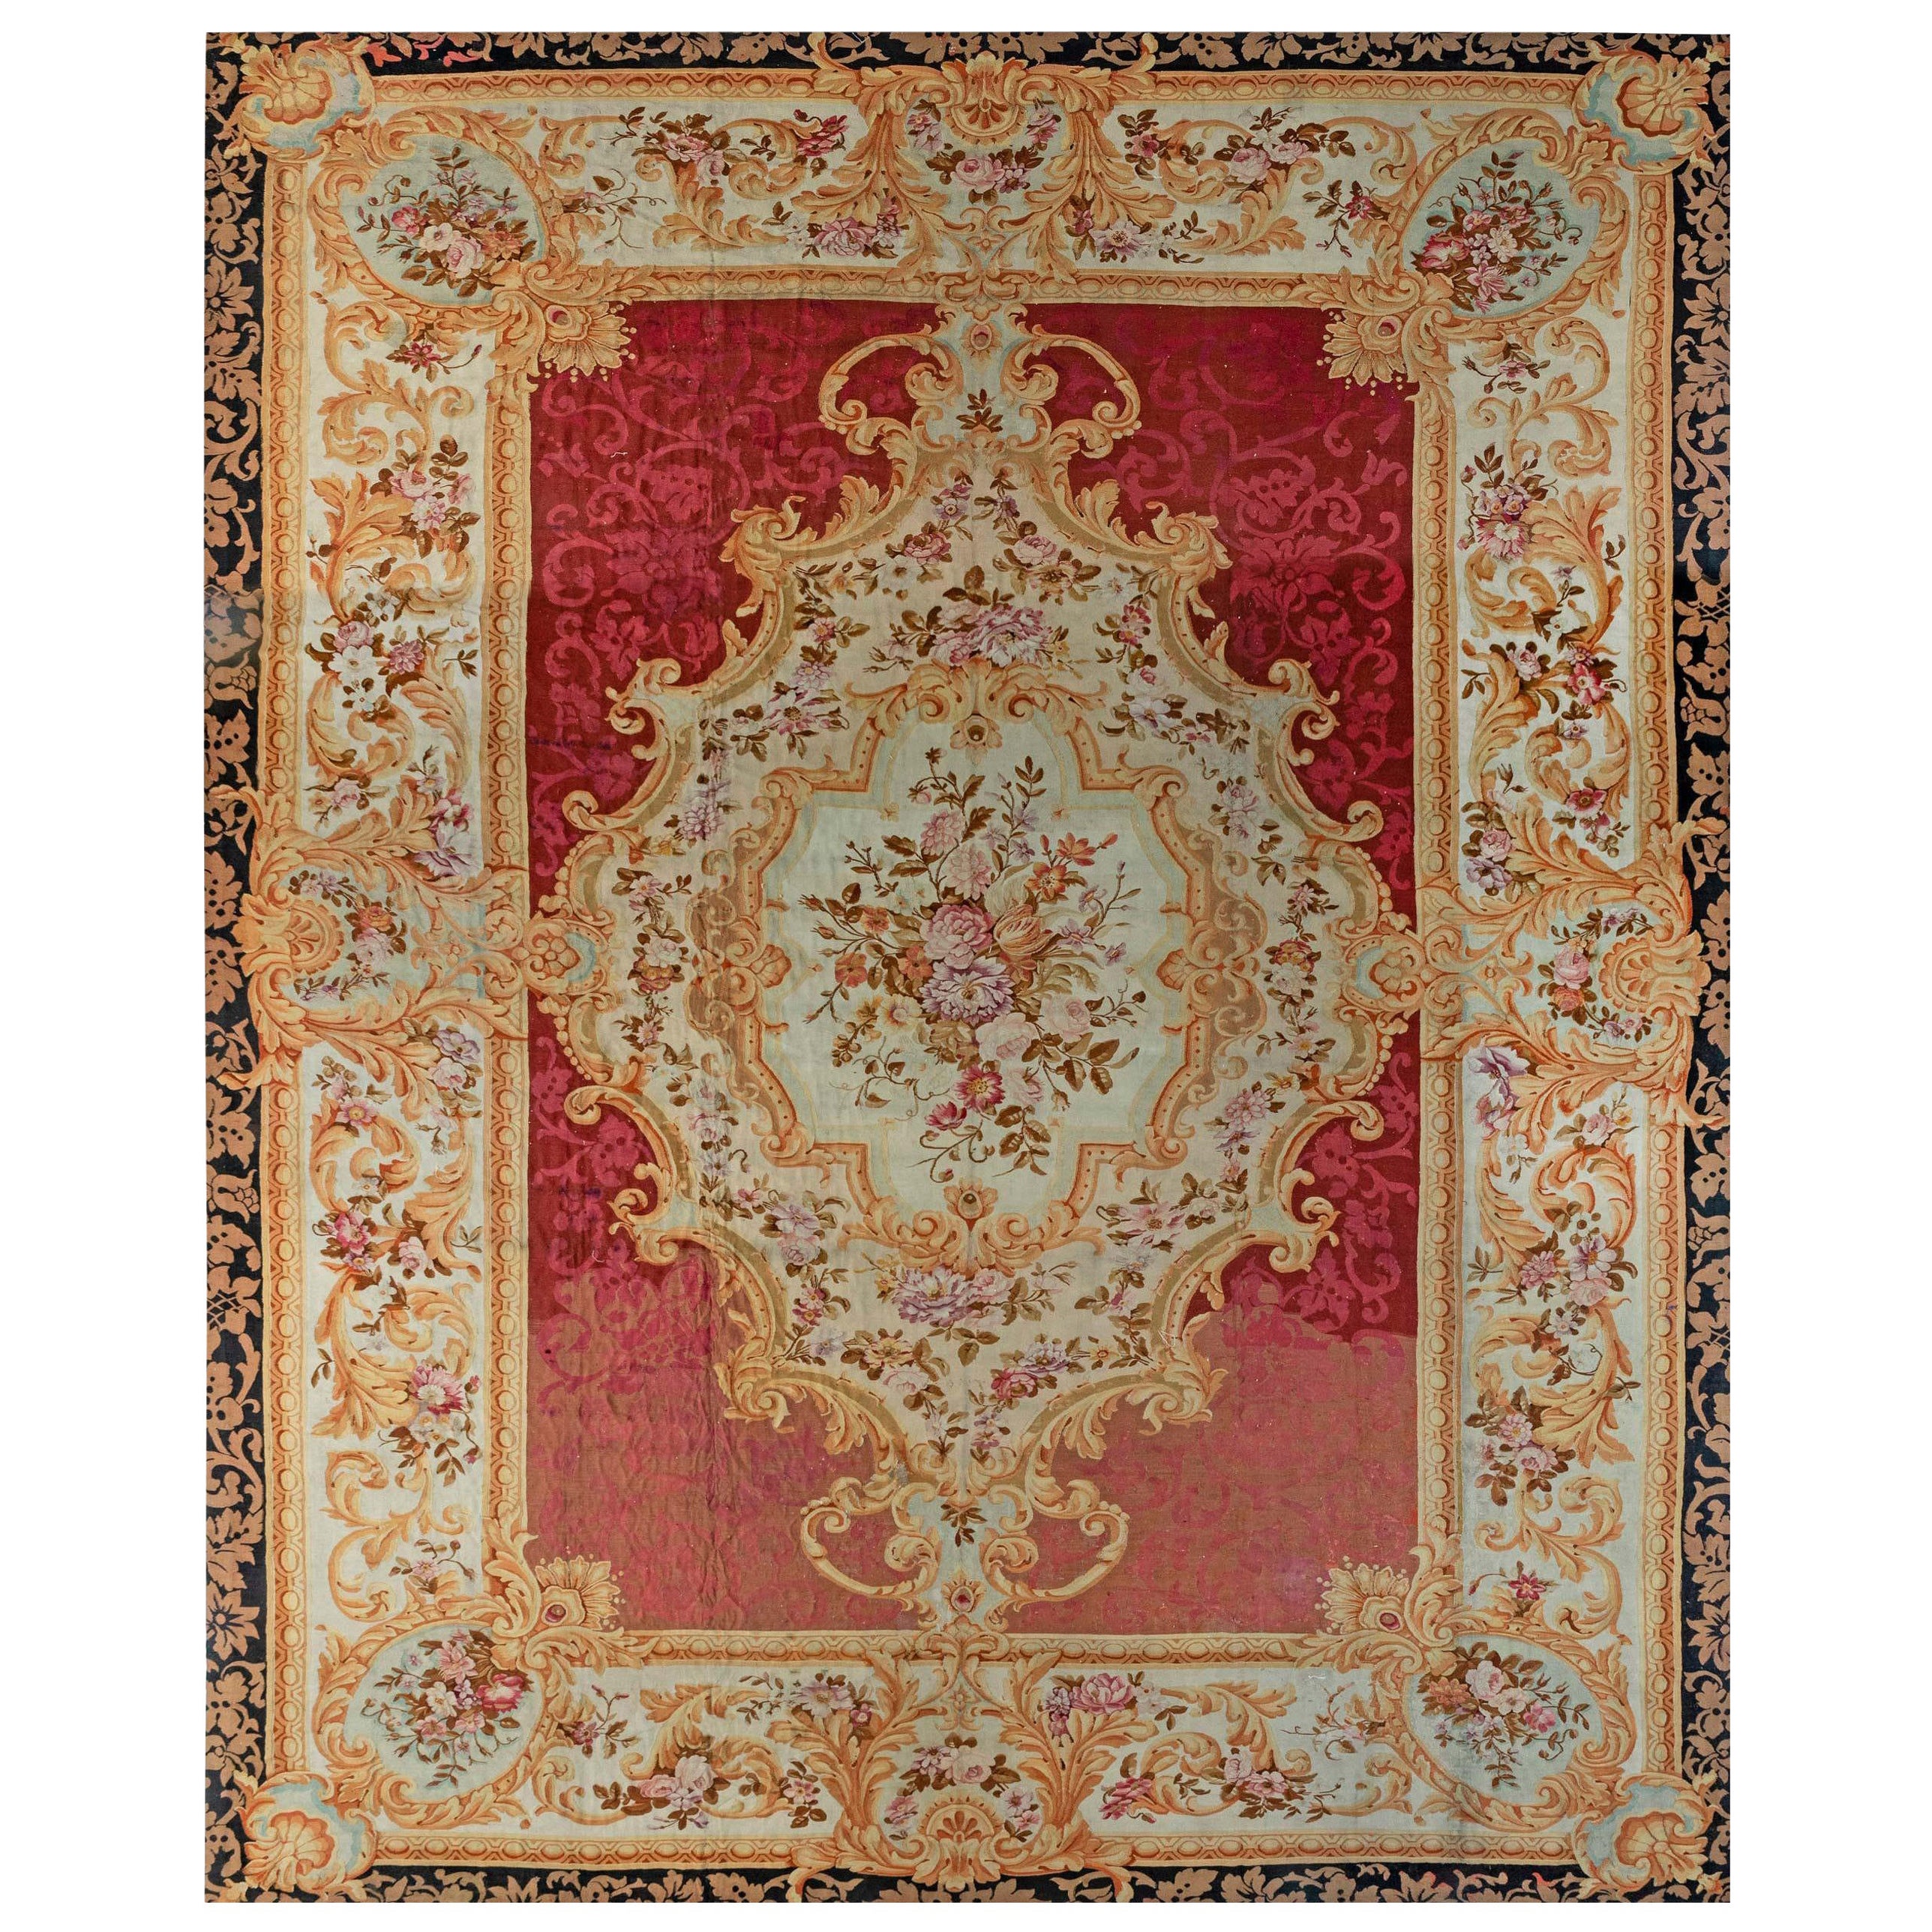 Authentischer französischer Aubusson-Teppich mit Blumenmuster aus dem 19.